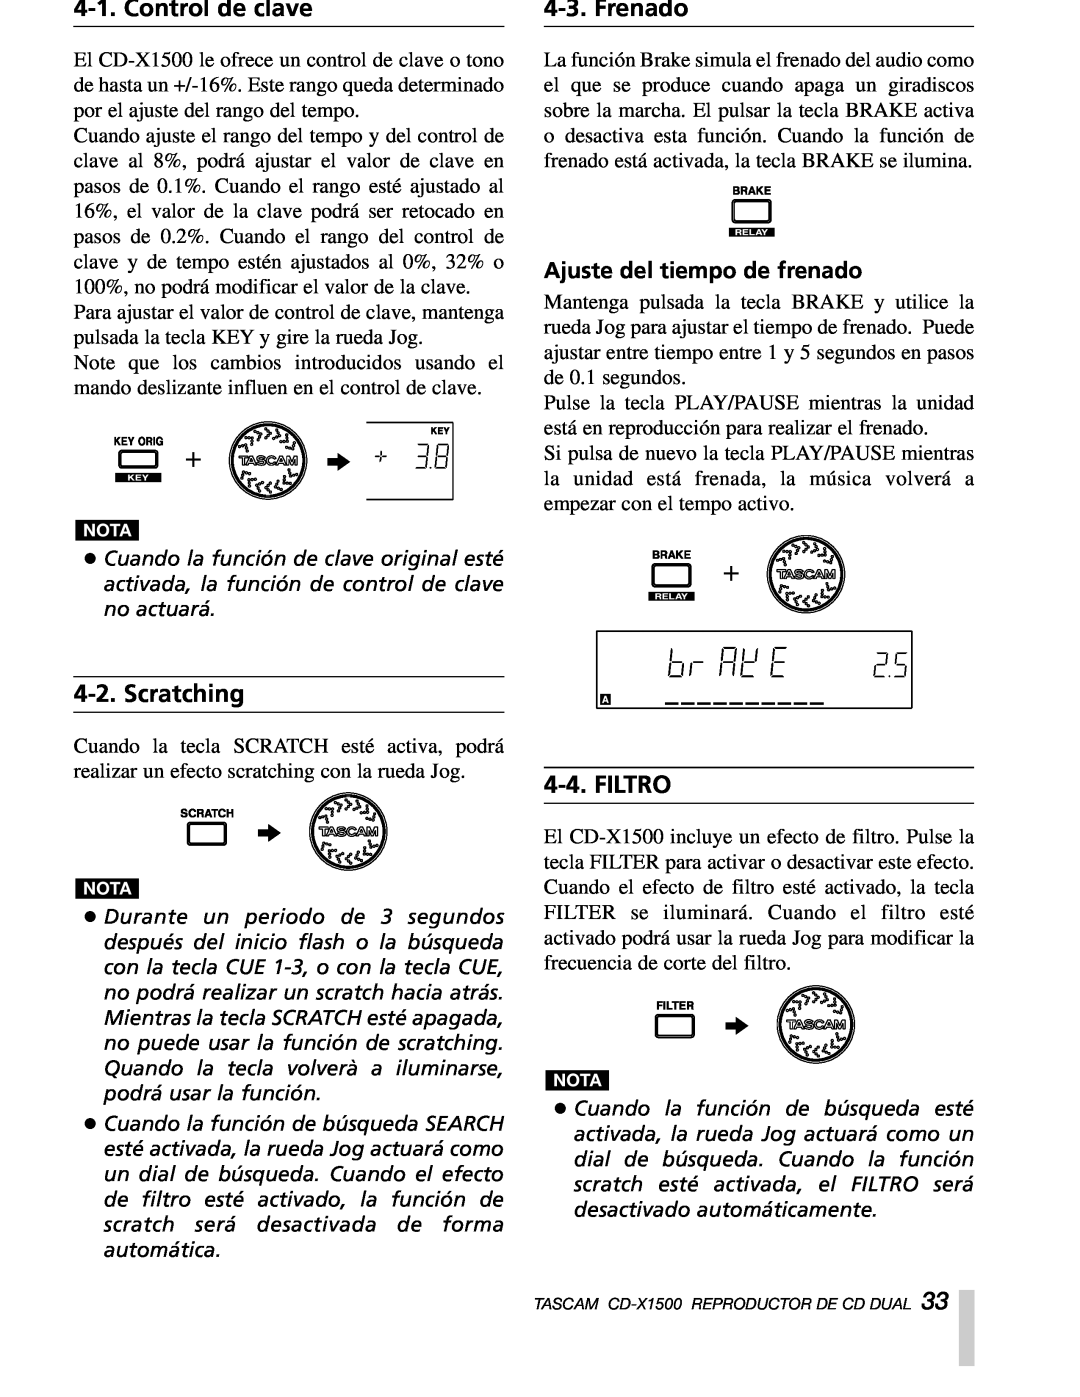 Sony CD-X1500 owner manual Control de clave, Frenado, Filtro, Ajuste del tiempo de frenado, Scratching 